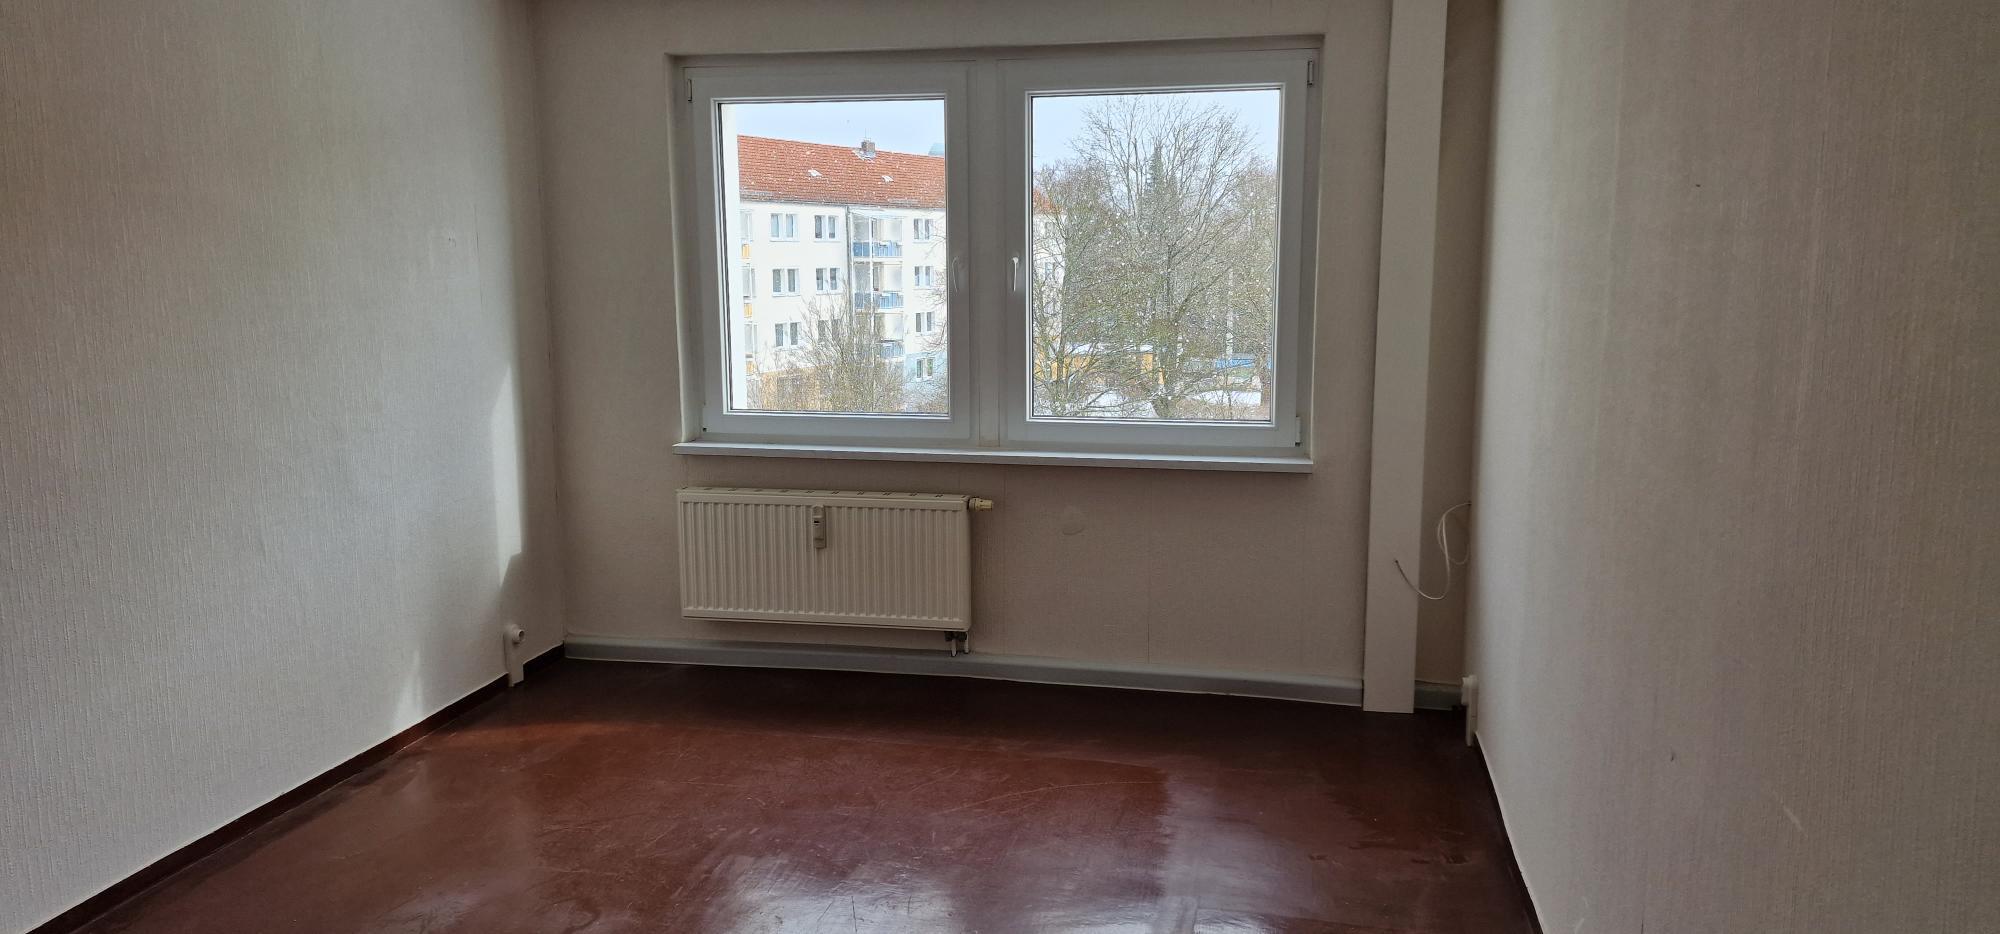 Bild 4 MAUI'S MISSION  Wohnungs- & Haushaltsauflösungen in Görlitz